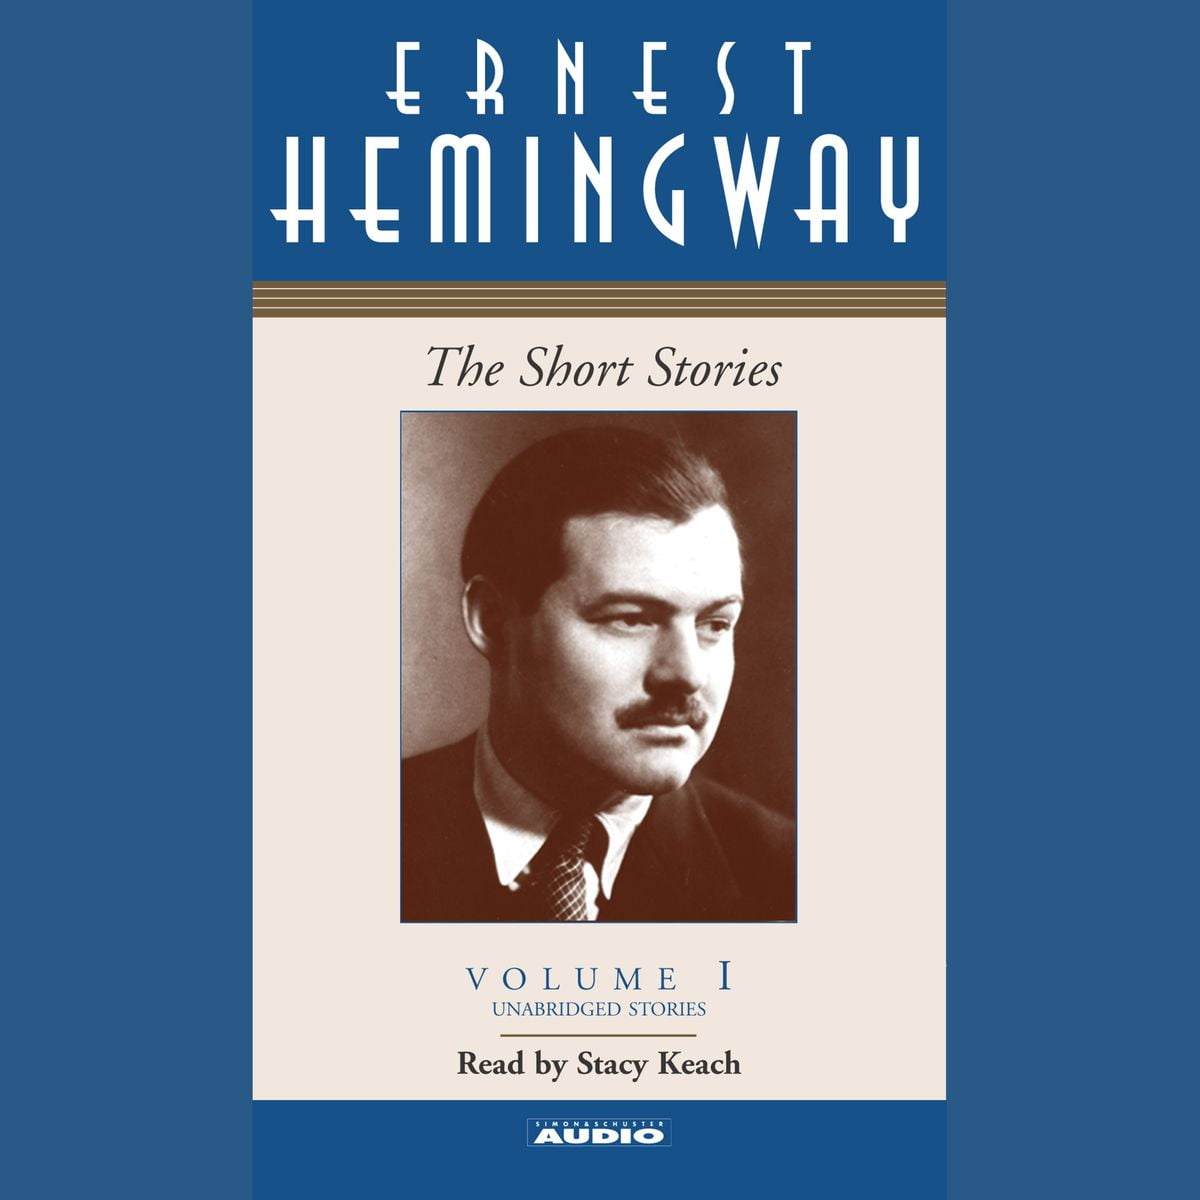 Хемингуэй на английском. Хемингуэй рассказы. Hemingway the shortest story. Ernest Hemingway short stories.